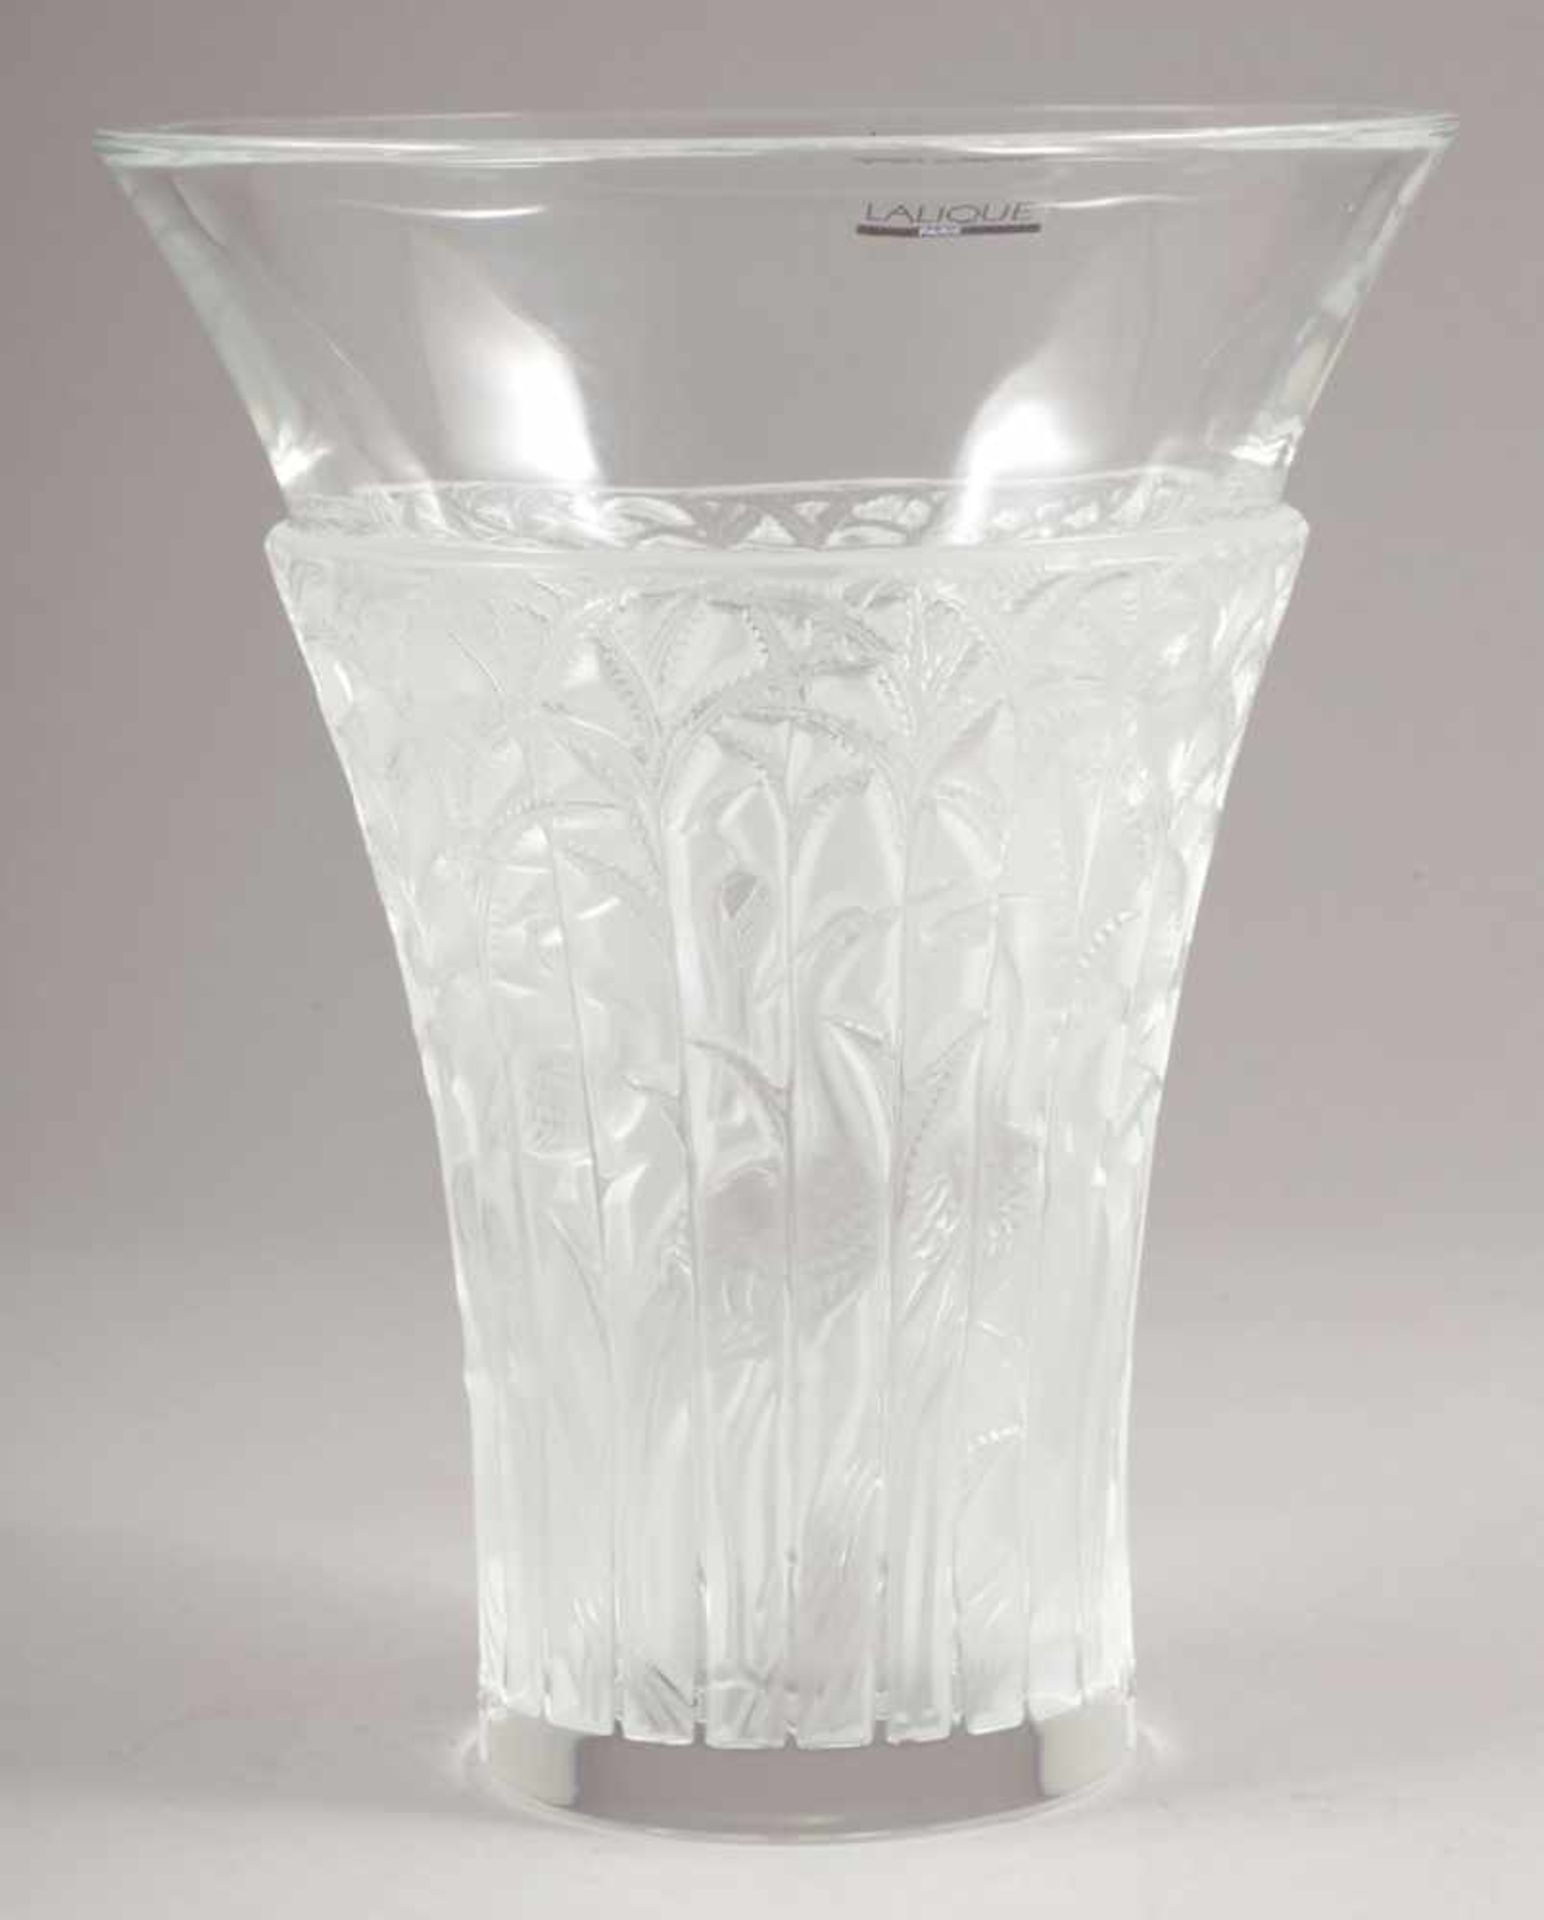 Vase - Ibis RLLalique, Wingen-sur-Moder 2010. Farbloses Glas, formgepresst, z. T. mattiert. Auf